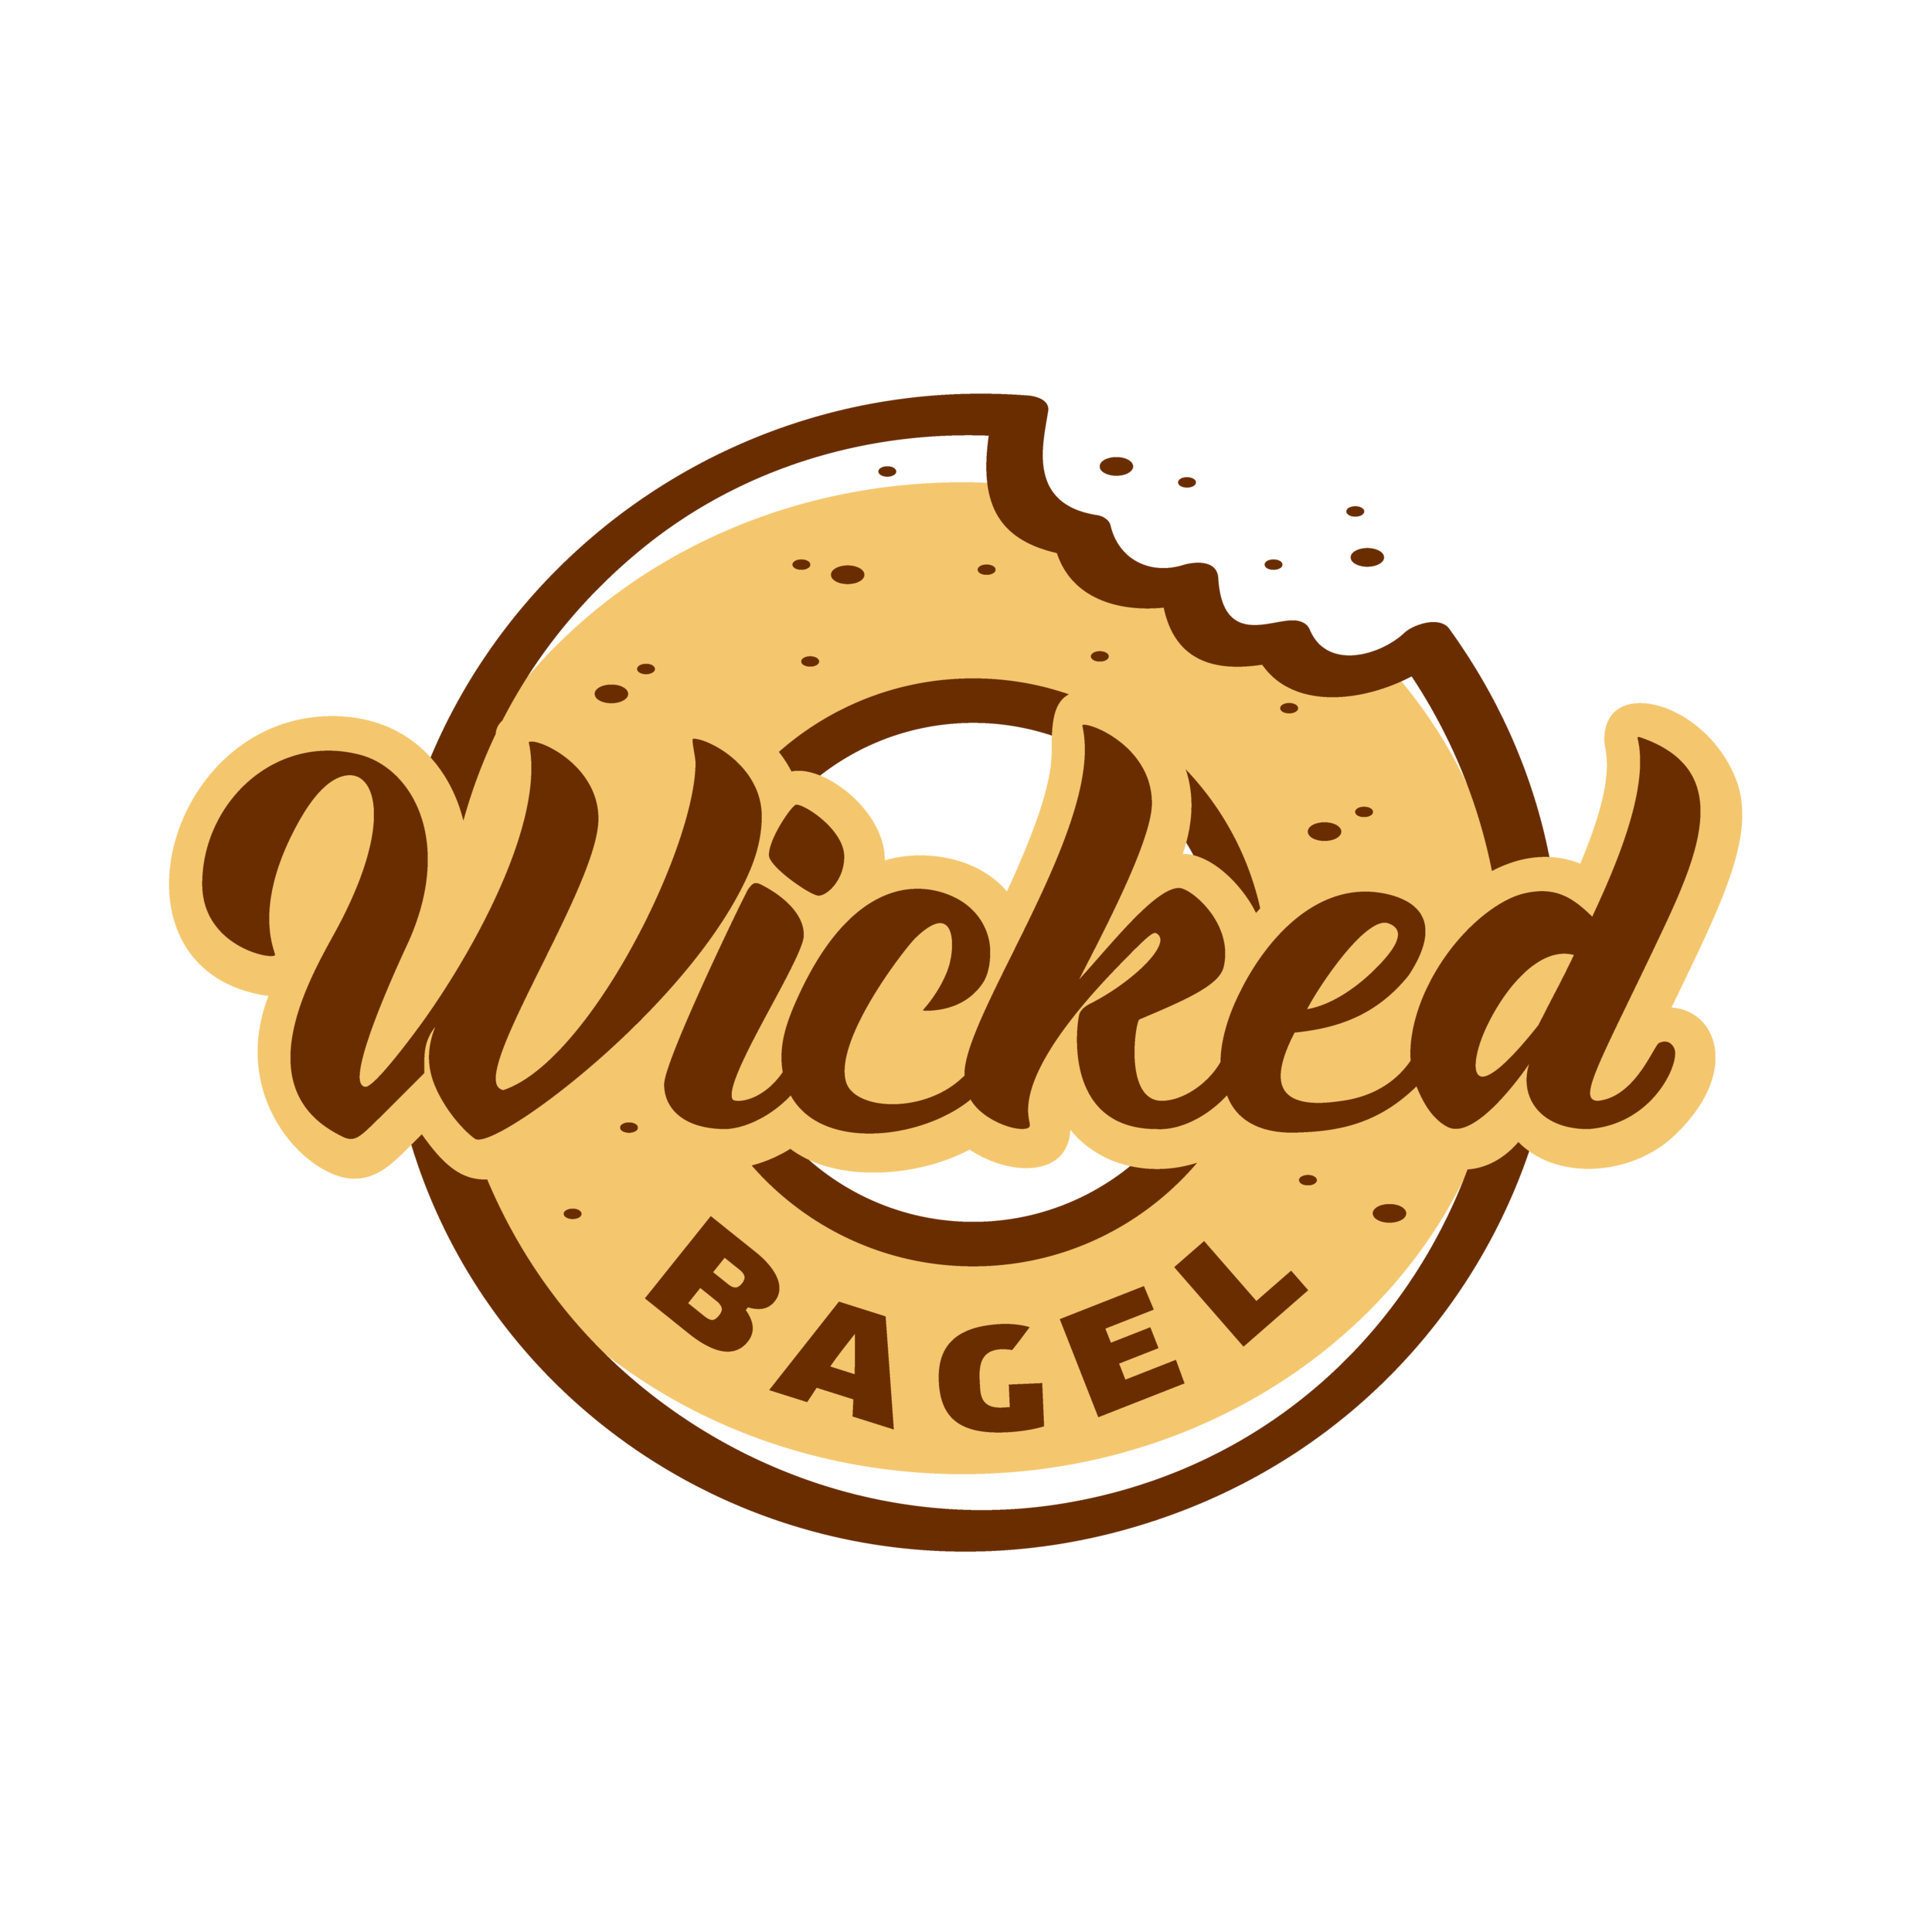 Wicked Bagel